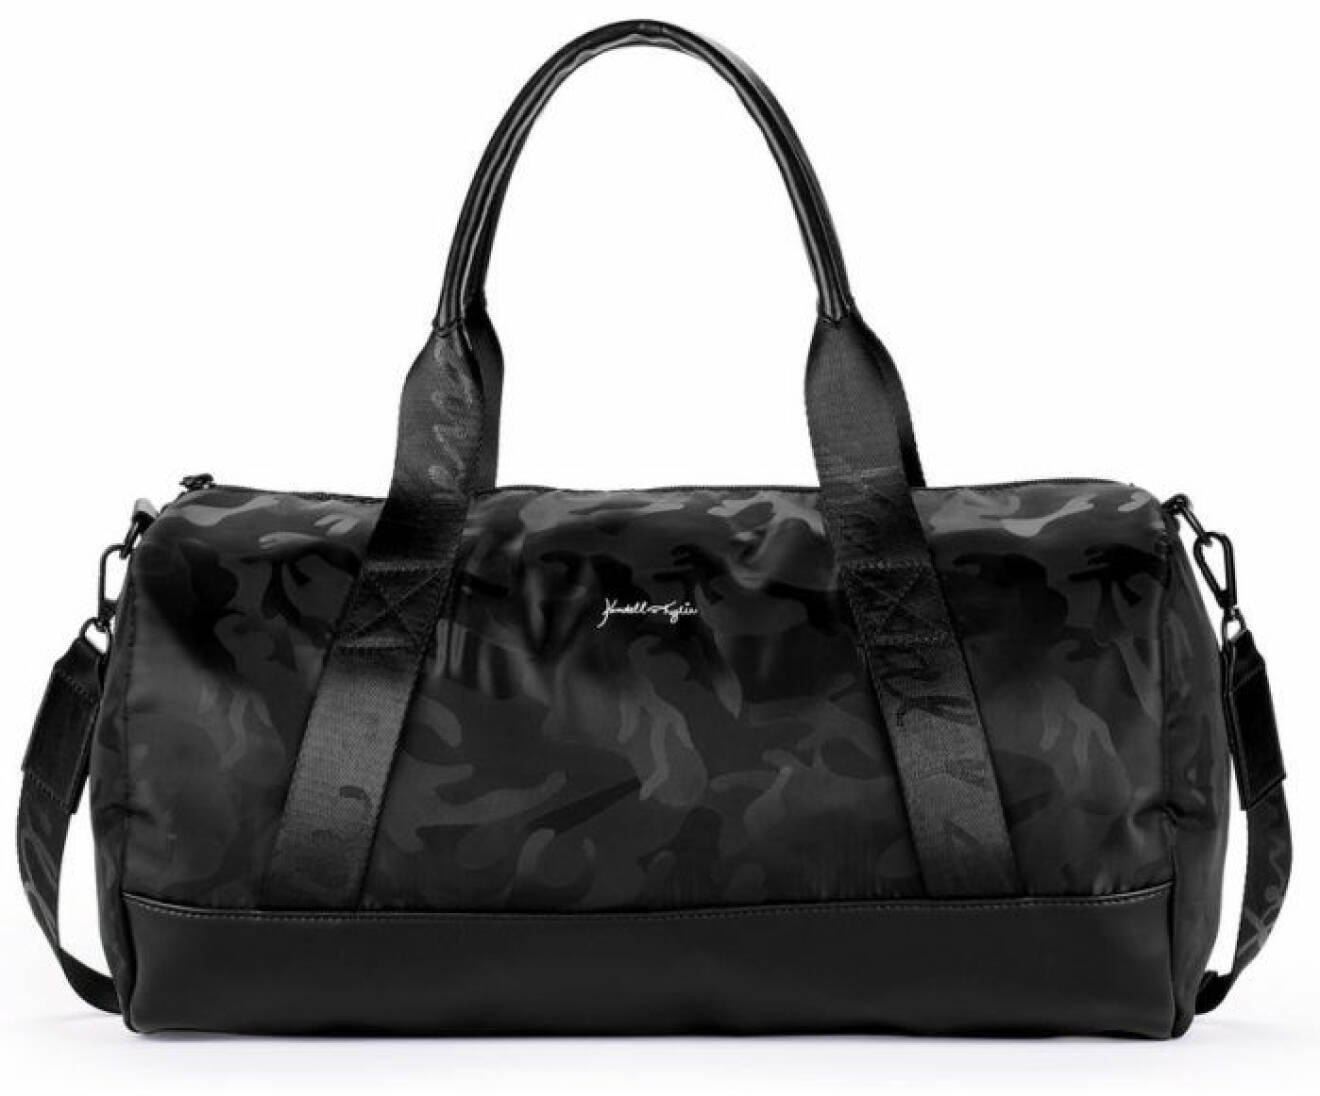 En bild på en sportbag i svart kamouflagemönster från Kendall och Kylie Jenners väskkollektion för Walmart.